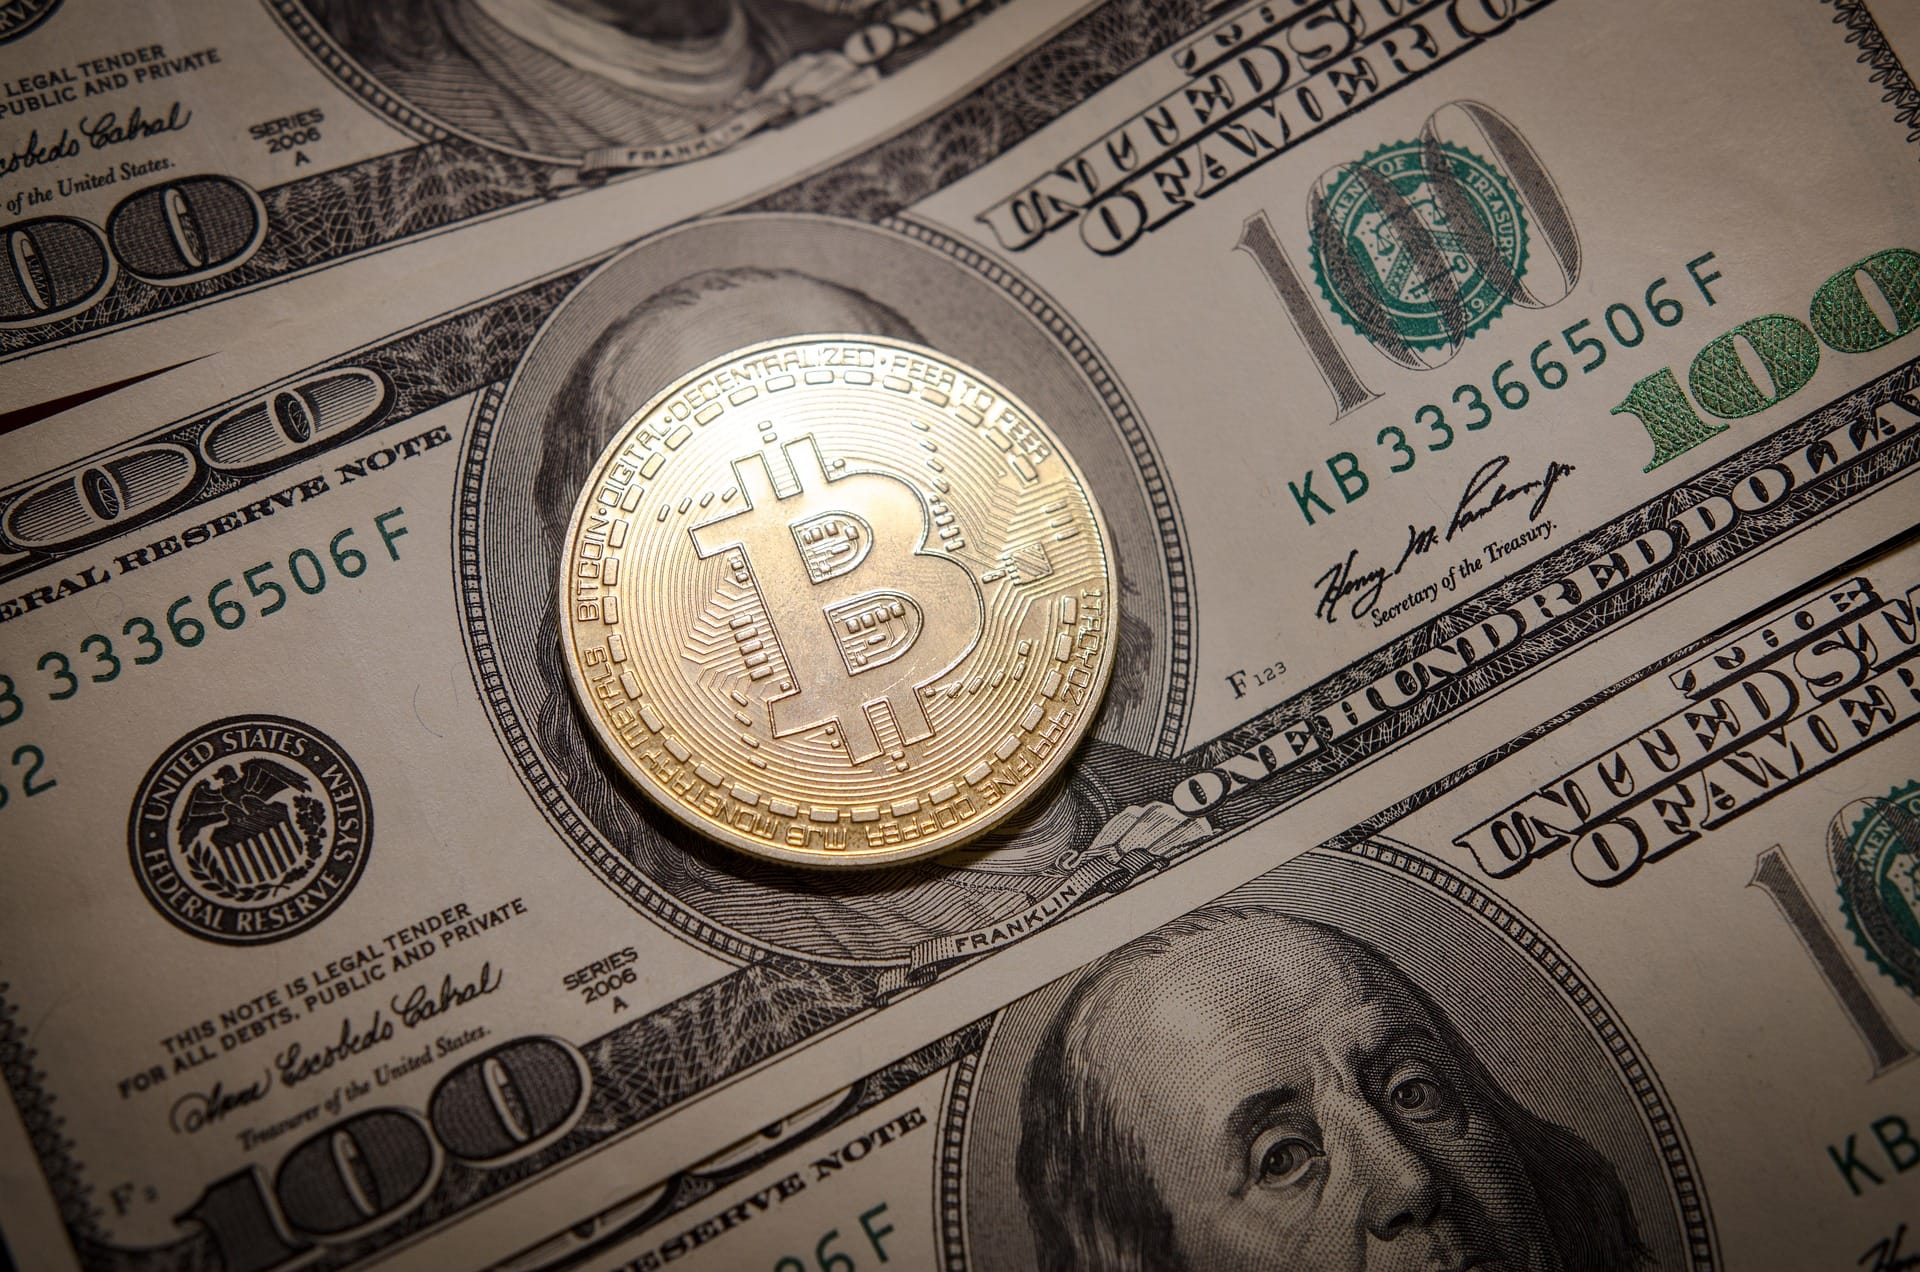 Bitcoin and USD dominates